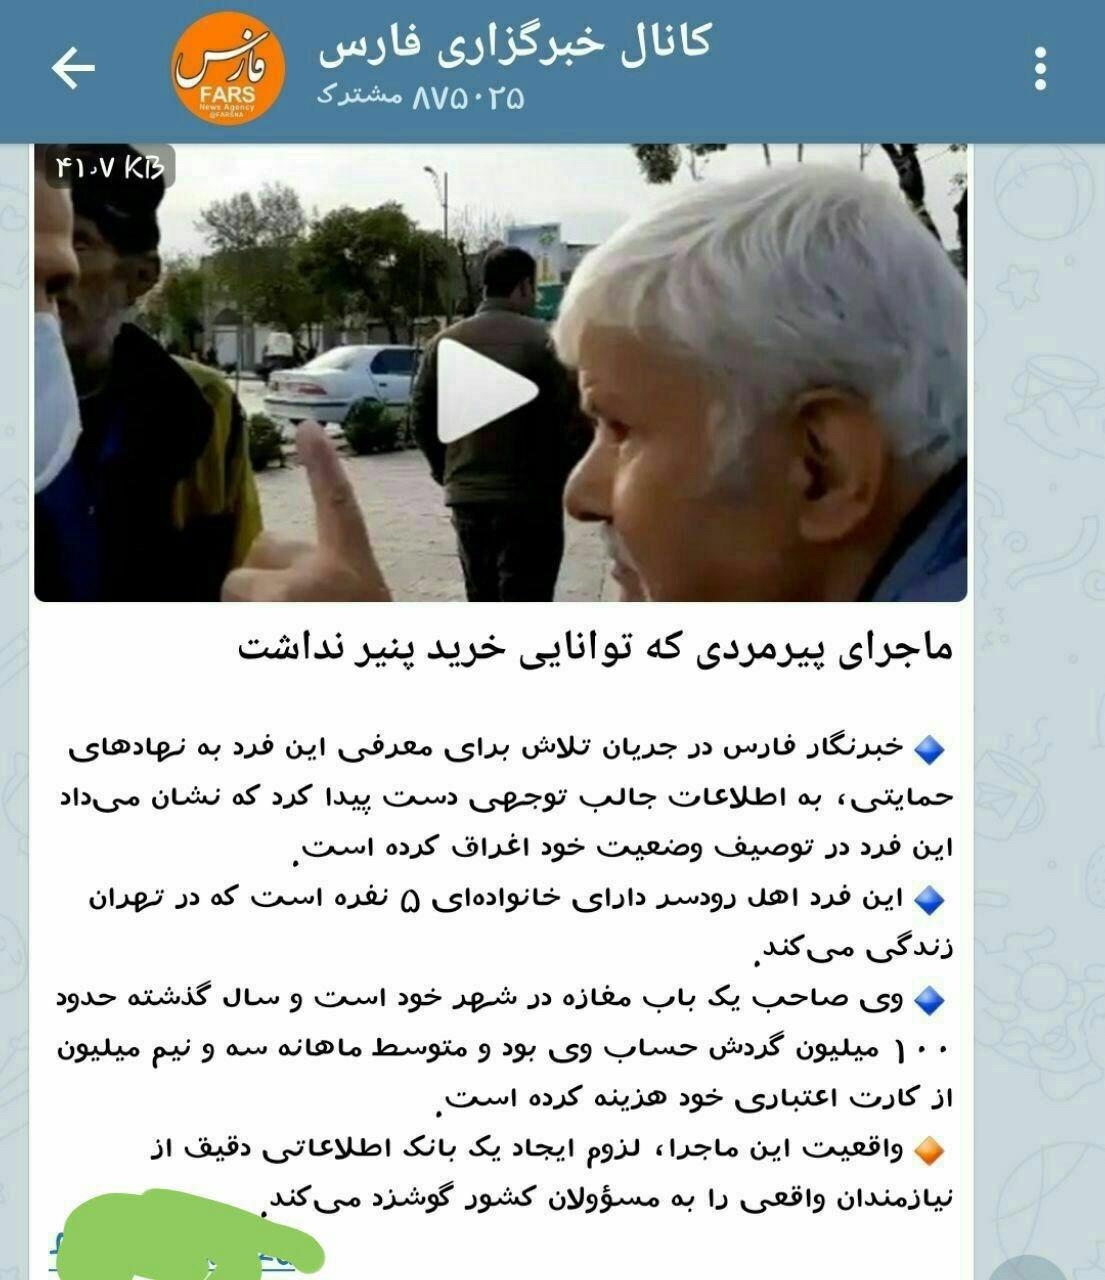 انتشار پرونده پیرمرد دستفروشی که توان خرید یک پنیر را نداشت در خبرگزاری فارس!